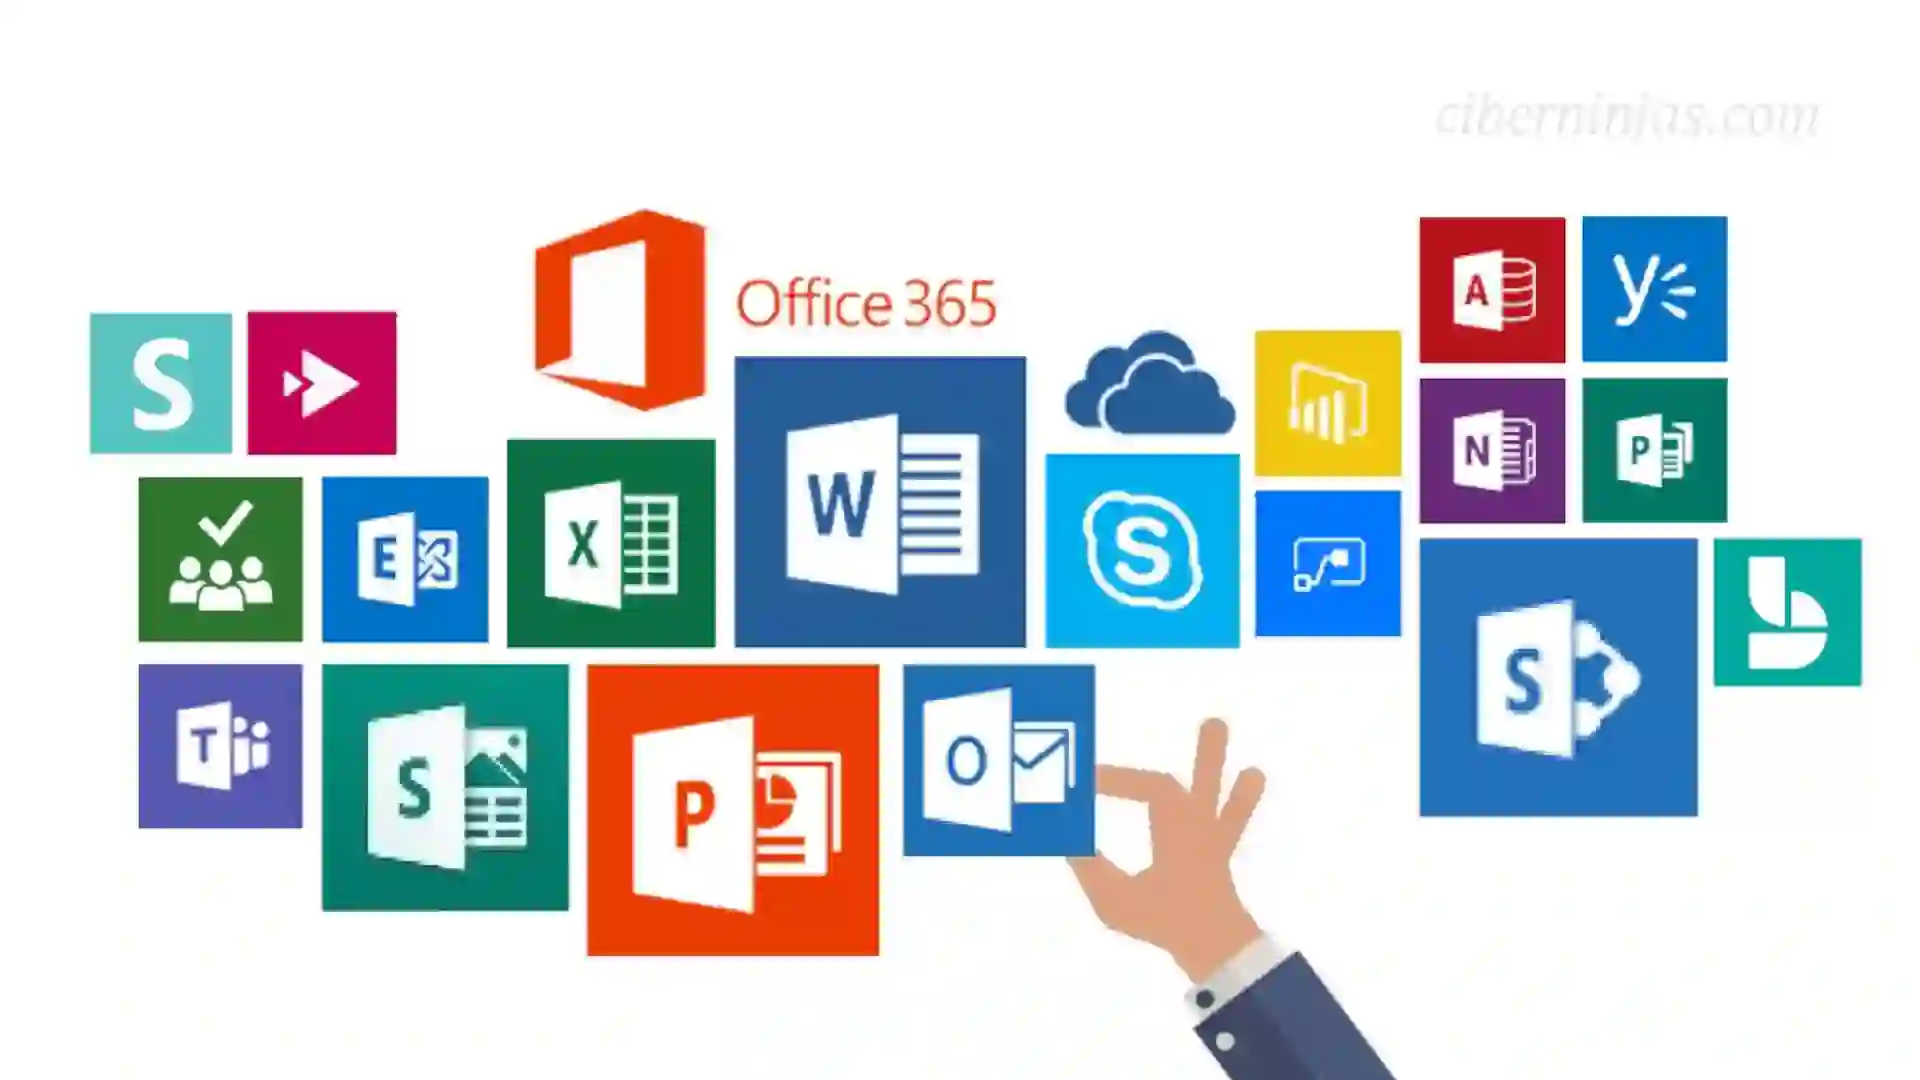 Microsoft Office 365 a precio mínimo histórico por el Amazon Prime Day